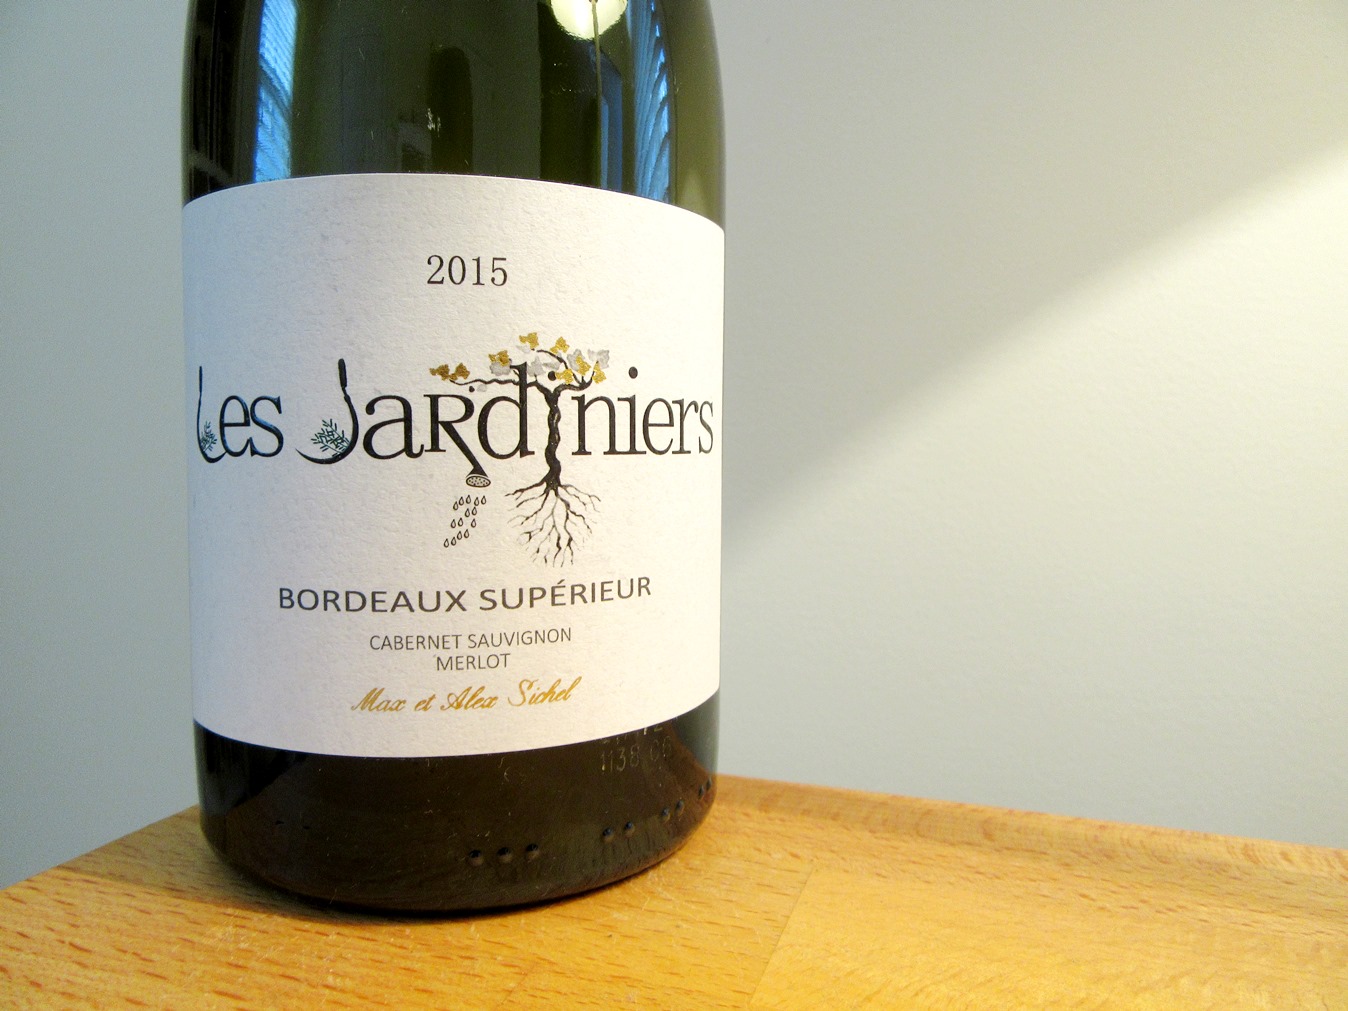 Max et Alex Sichel, Les Jardiniers Bordeaux Superieur 2015, France, Wine Casual